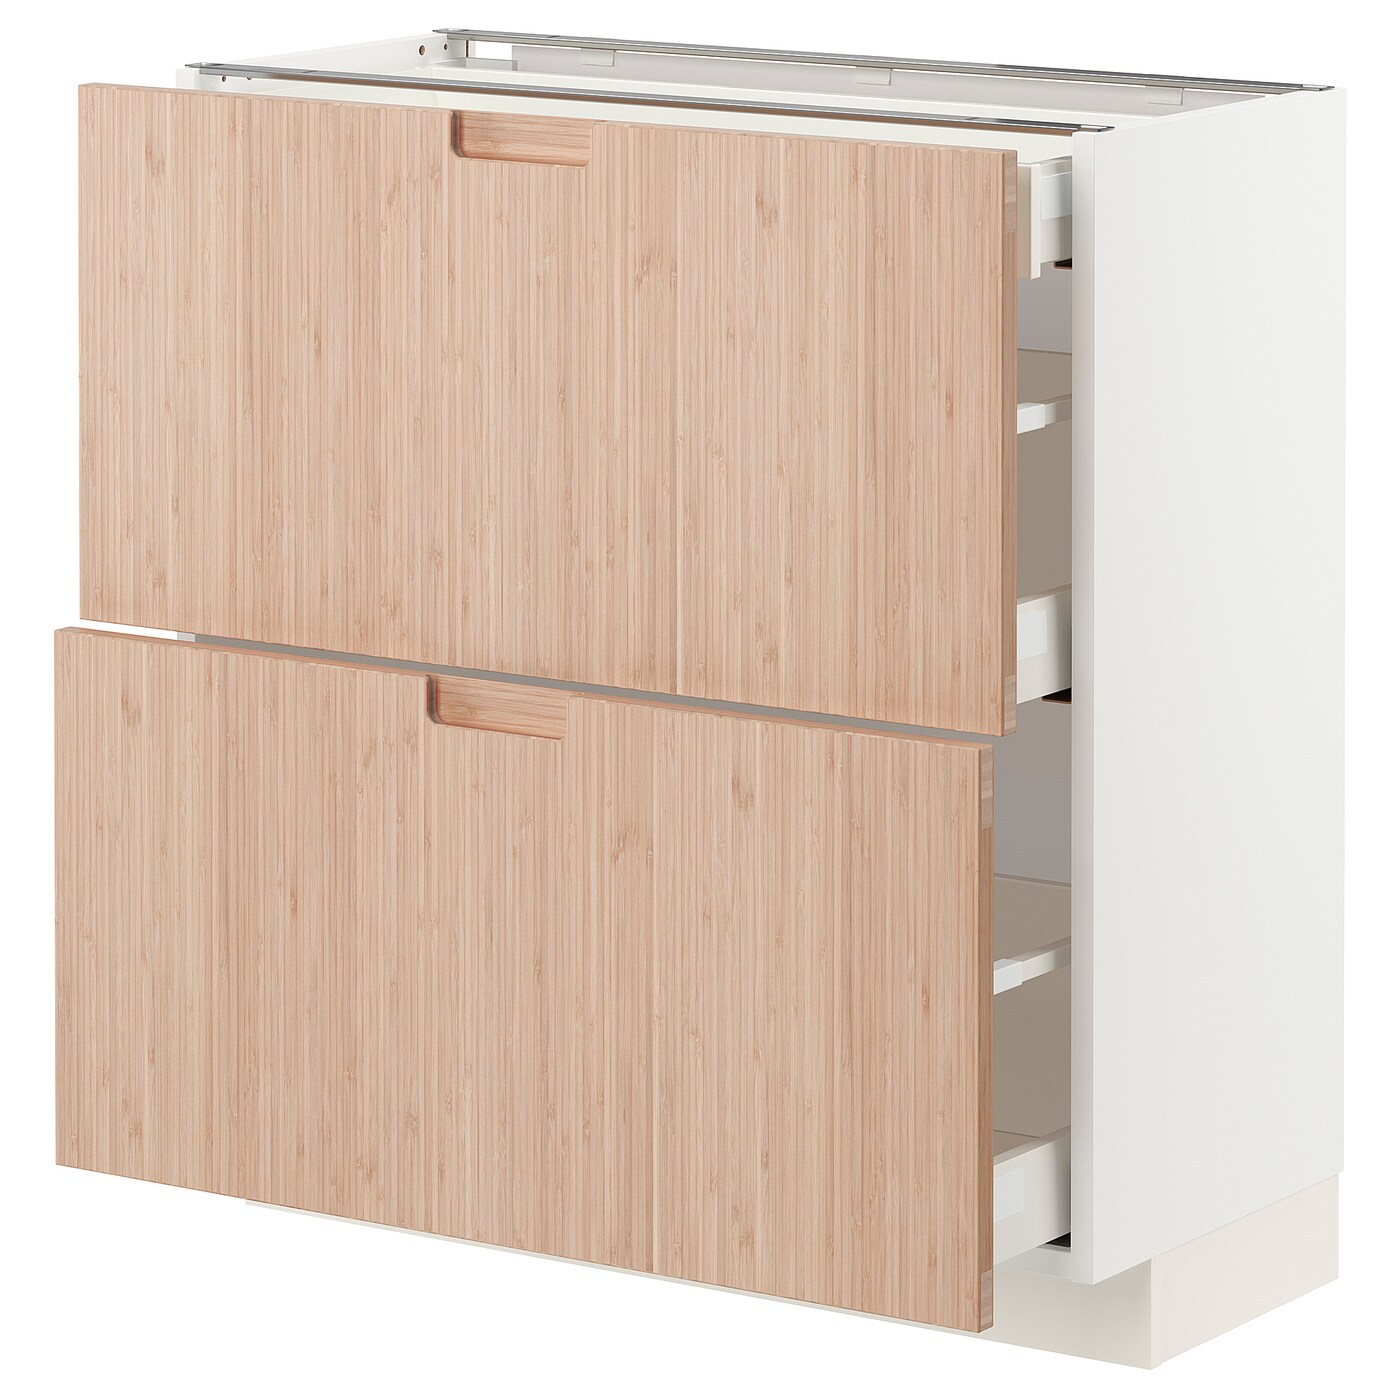 Напольный кухонный шкаф  - IKEA METOD MAXIMERA, 88x39,2x80см, белый/светло-коричневый, МЕТОД МАКСИМЕРА ИКЕА